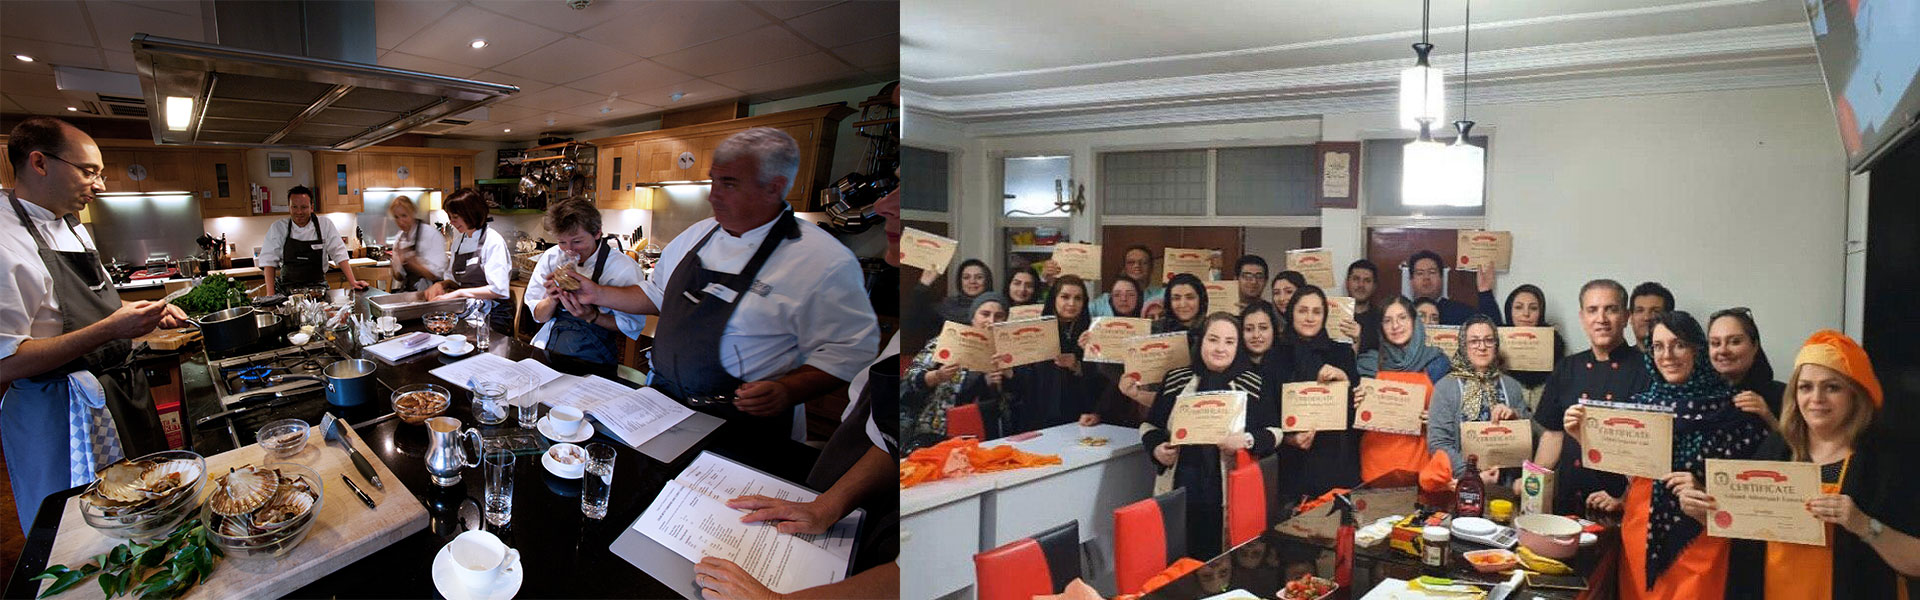 مدارس آشپزی در آمریکا و ایران جهت دانشجویان آشپزی